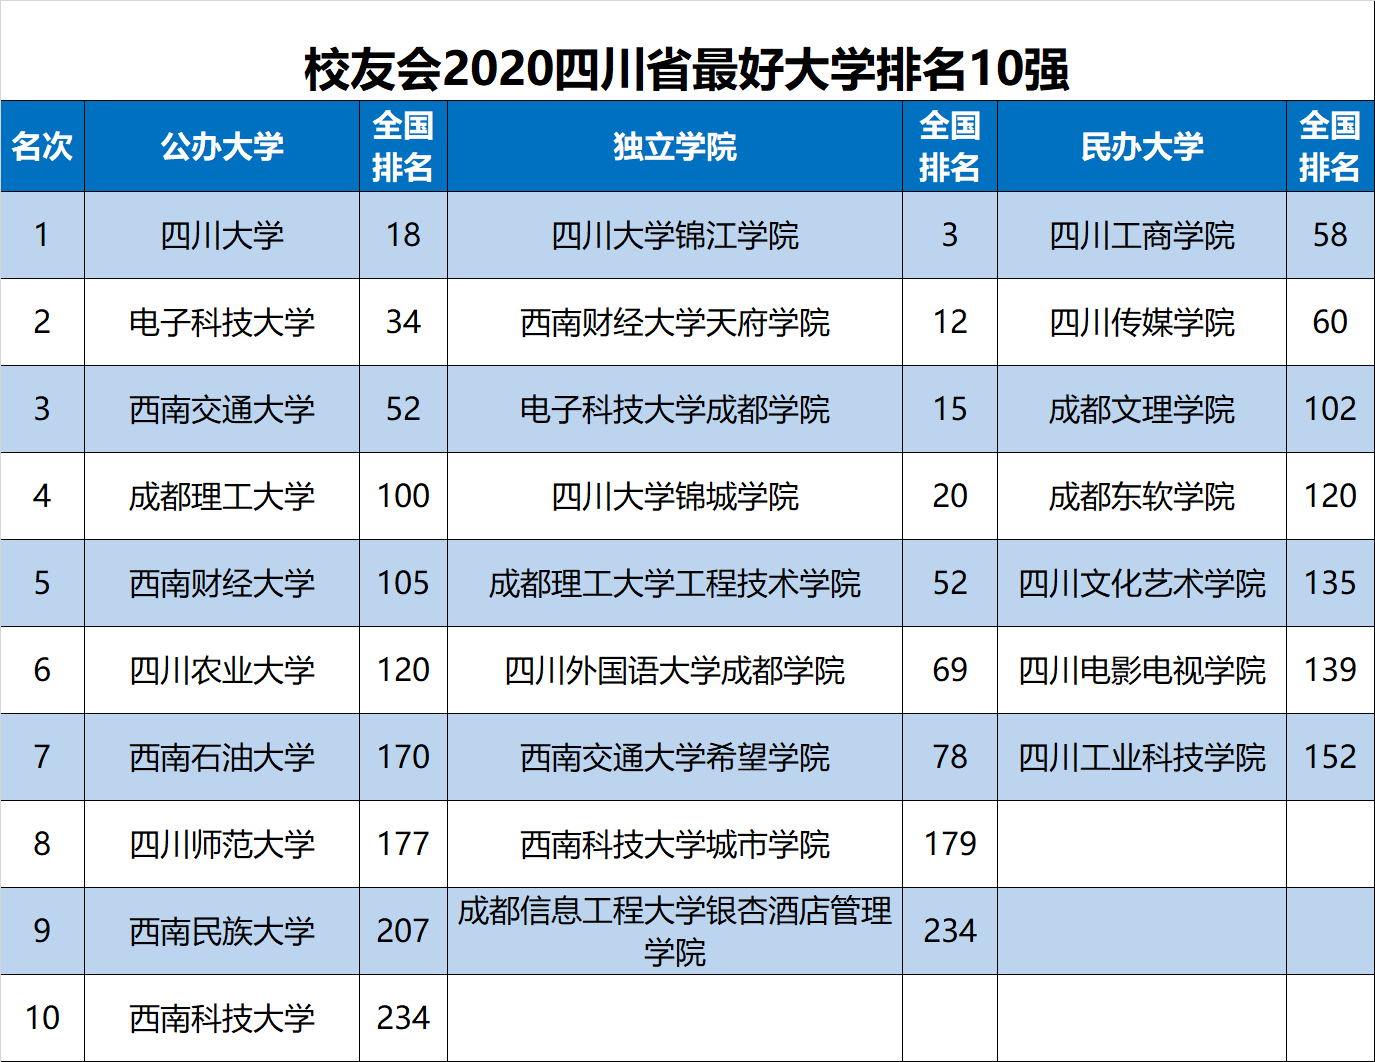 2020最新四川高校排名_2020中国西部地区大学排名发布,西安交大第1,四川大